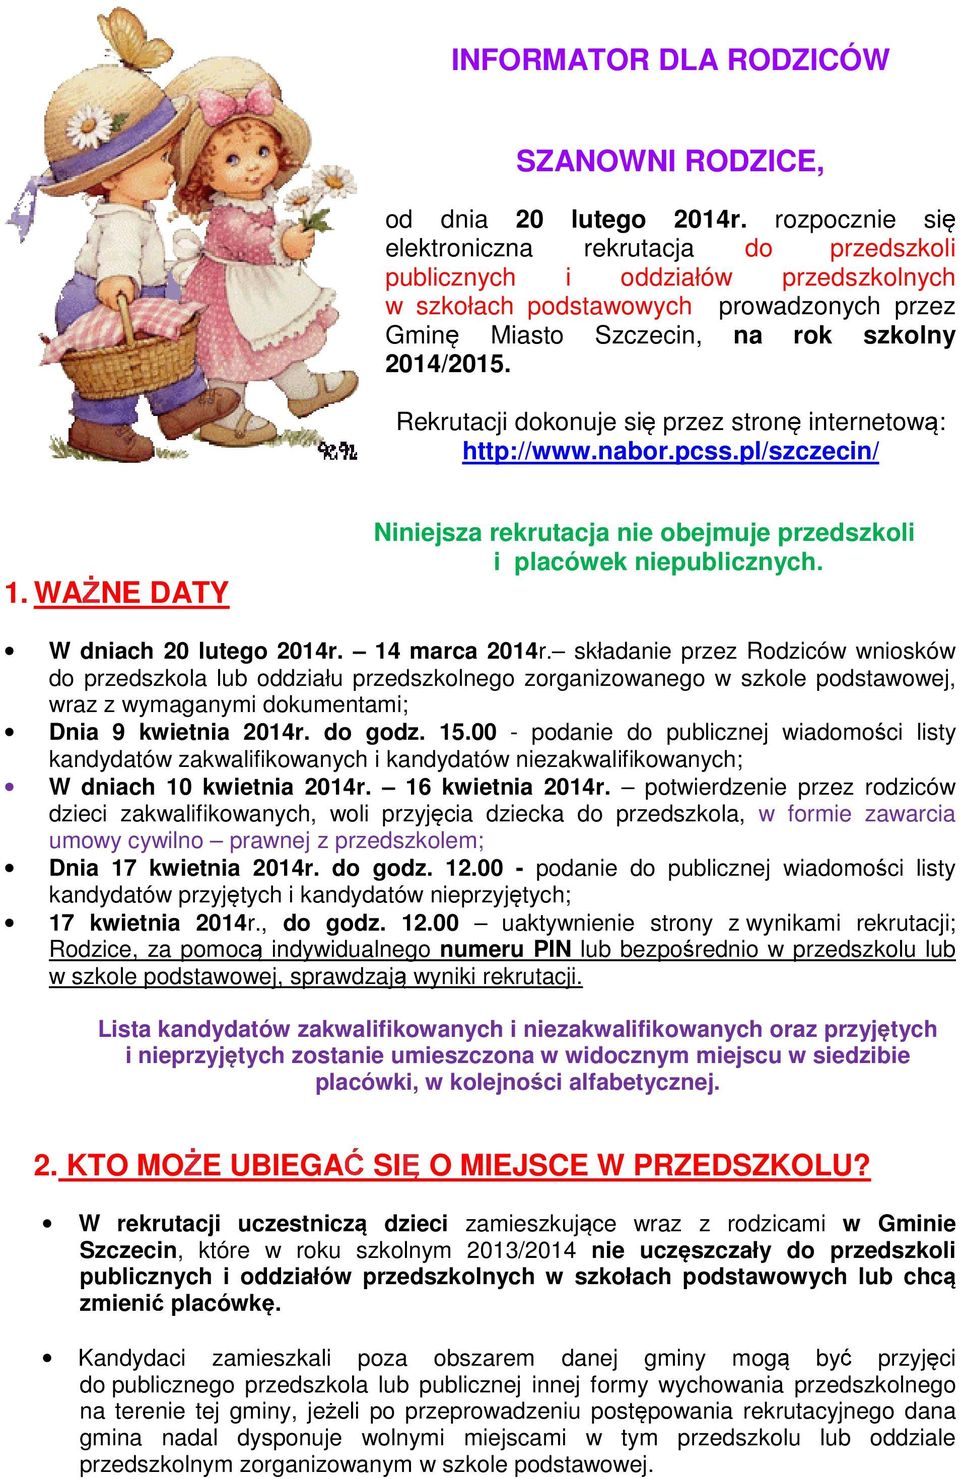 Rekrutacji dokonuje si przez stron internetow : http://www.nabor.pcss.pl/szczecin/ 1. WA NE DATY Niniejsza rekrutacja nie obejmuje przedszkoli i placówek niepublicznych. W dniach 20 lutego 2014r.